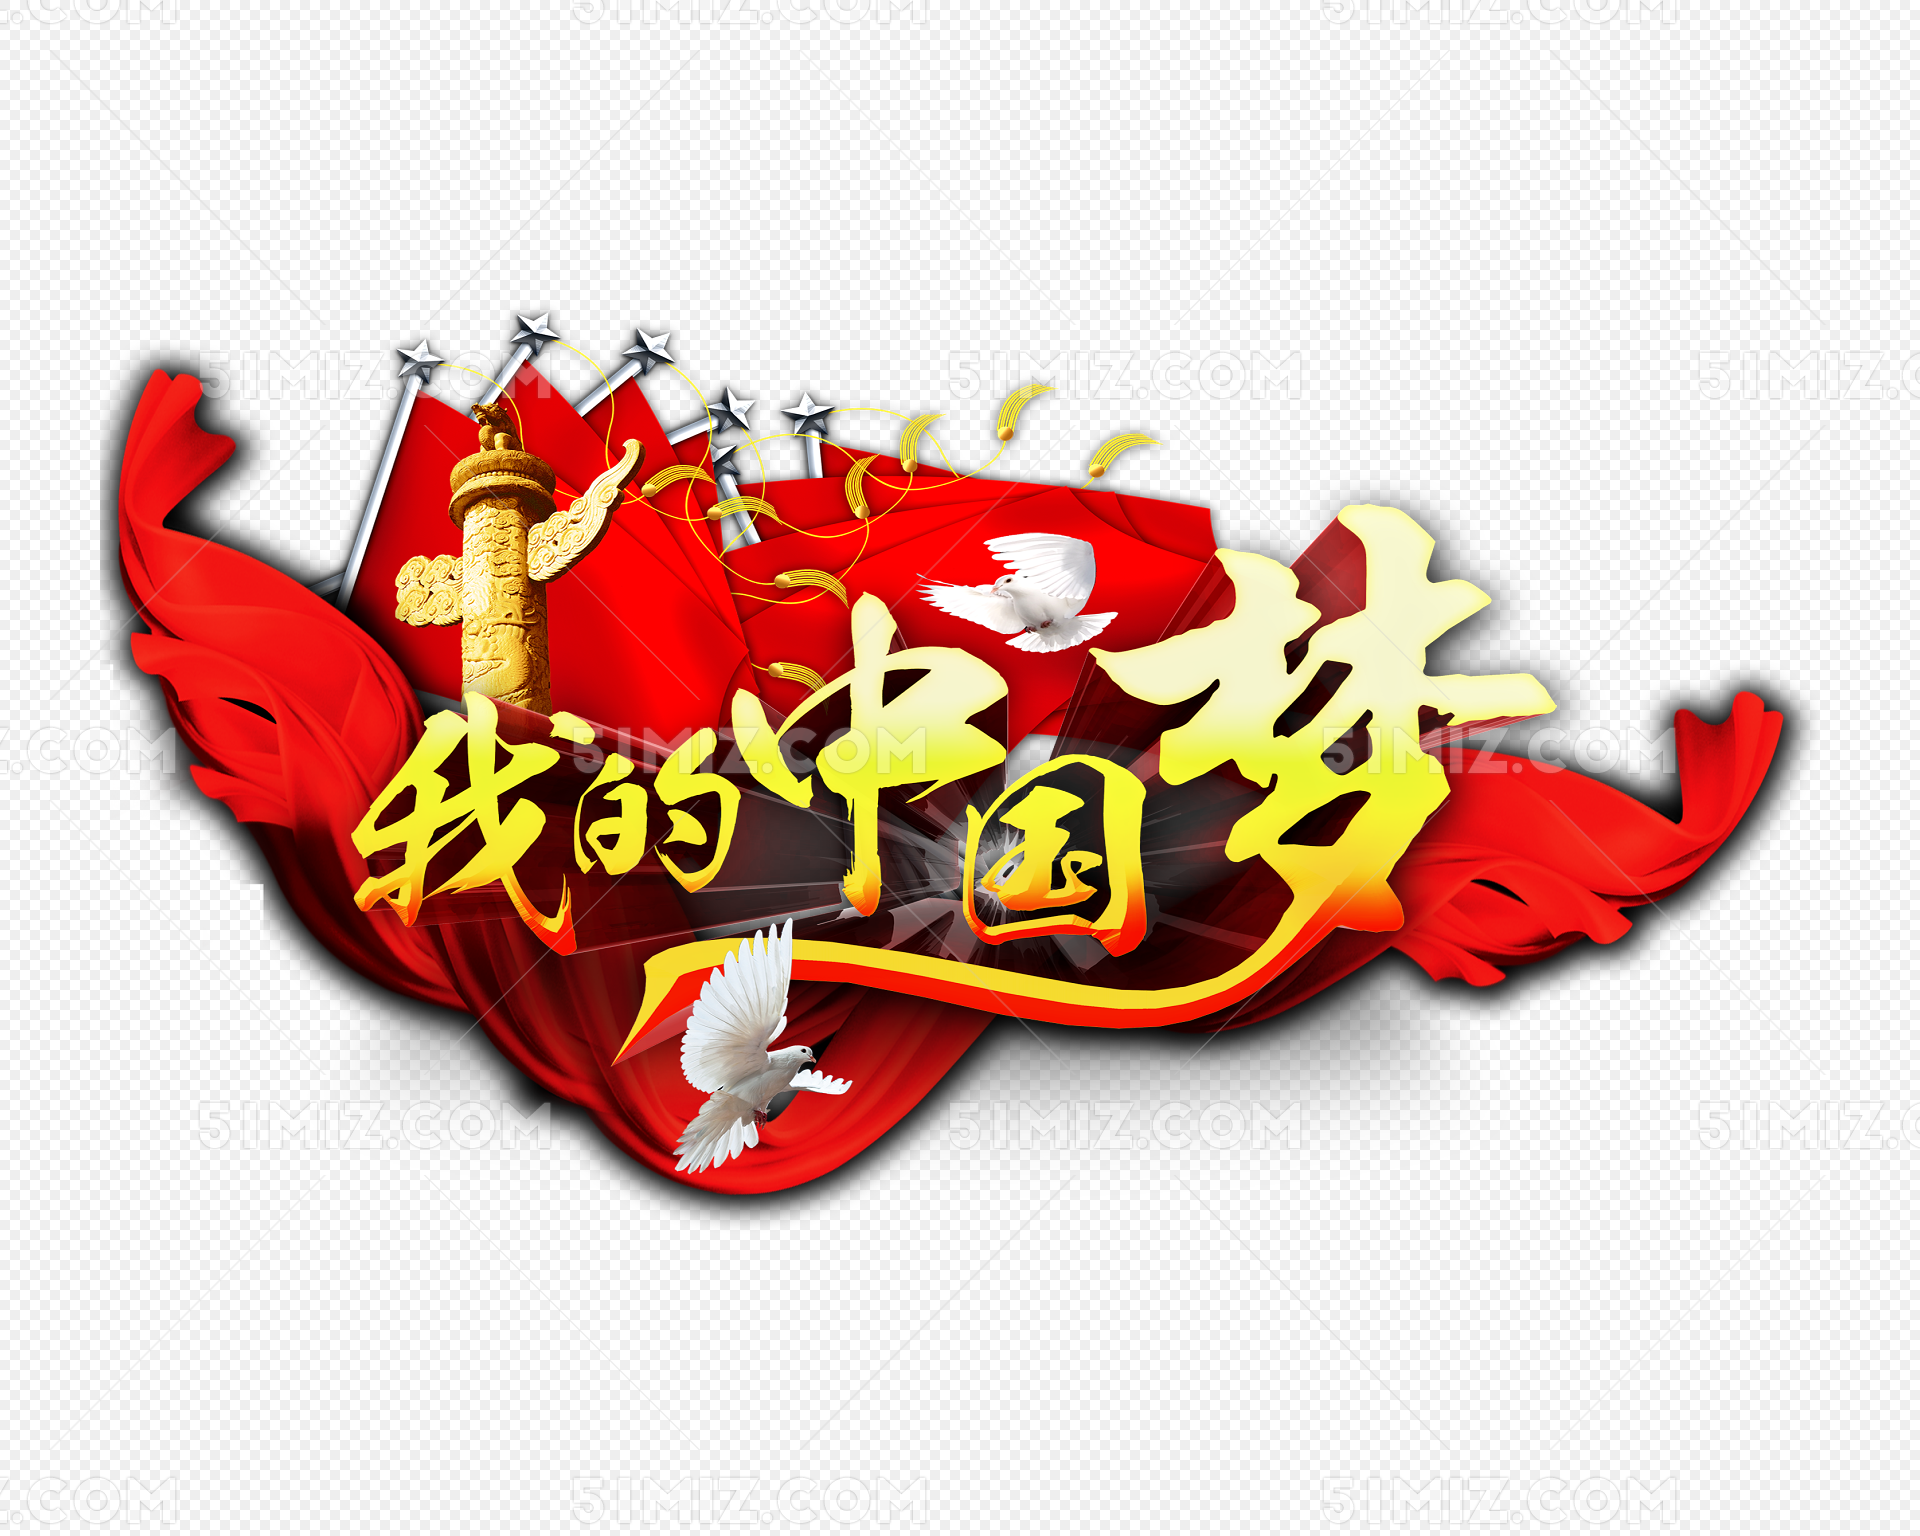 中国梦海报图片素材-编号40184373-图行天下